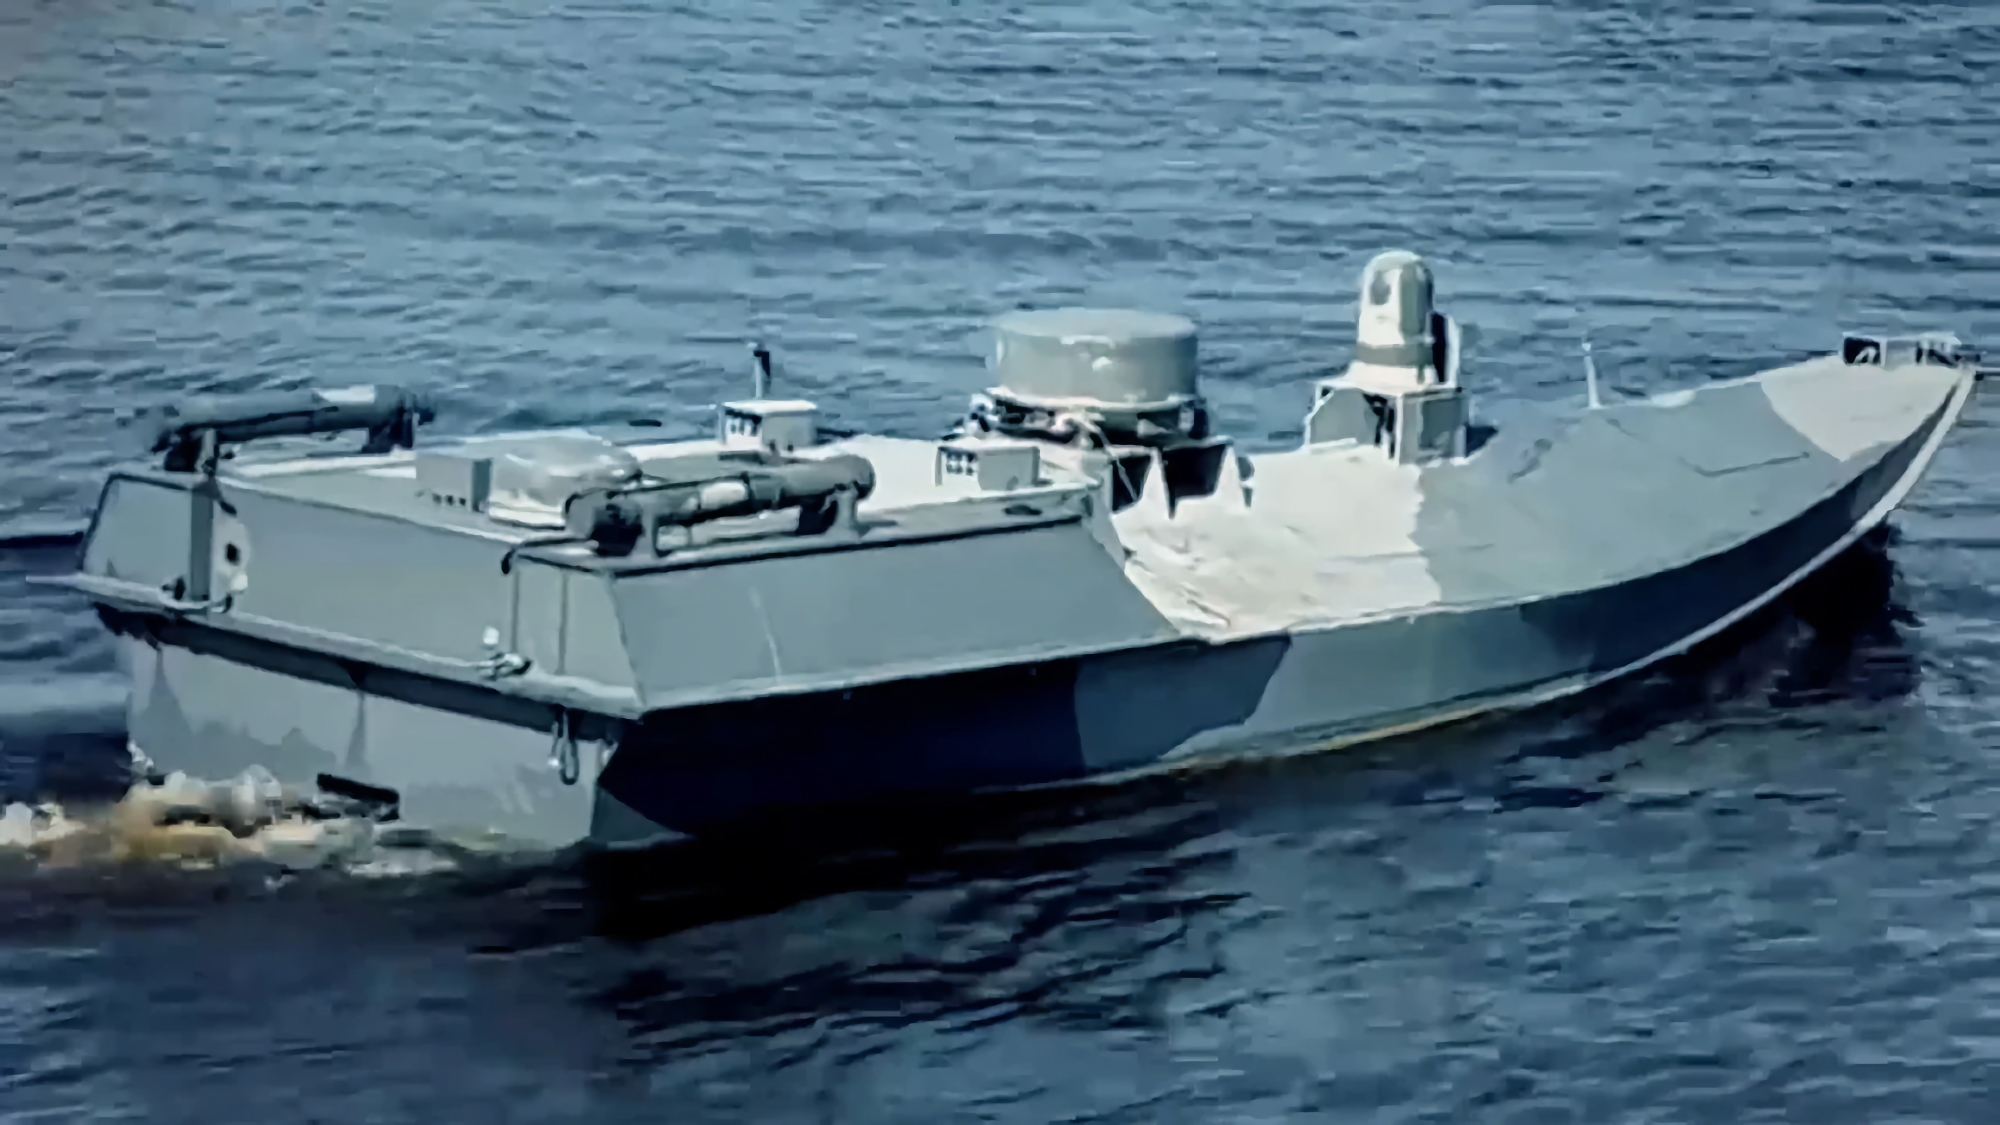 Oekraïne heeft een nieuwe Sea Baby maritieme drone met 850 kg explosieven ontwikkeld. De SSU heeft deze gebruikt voor een aanval op de Krimbrug in juli.